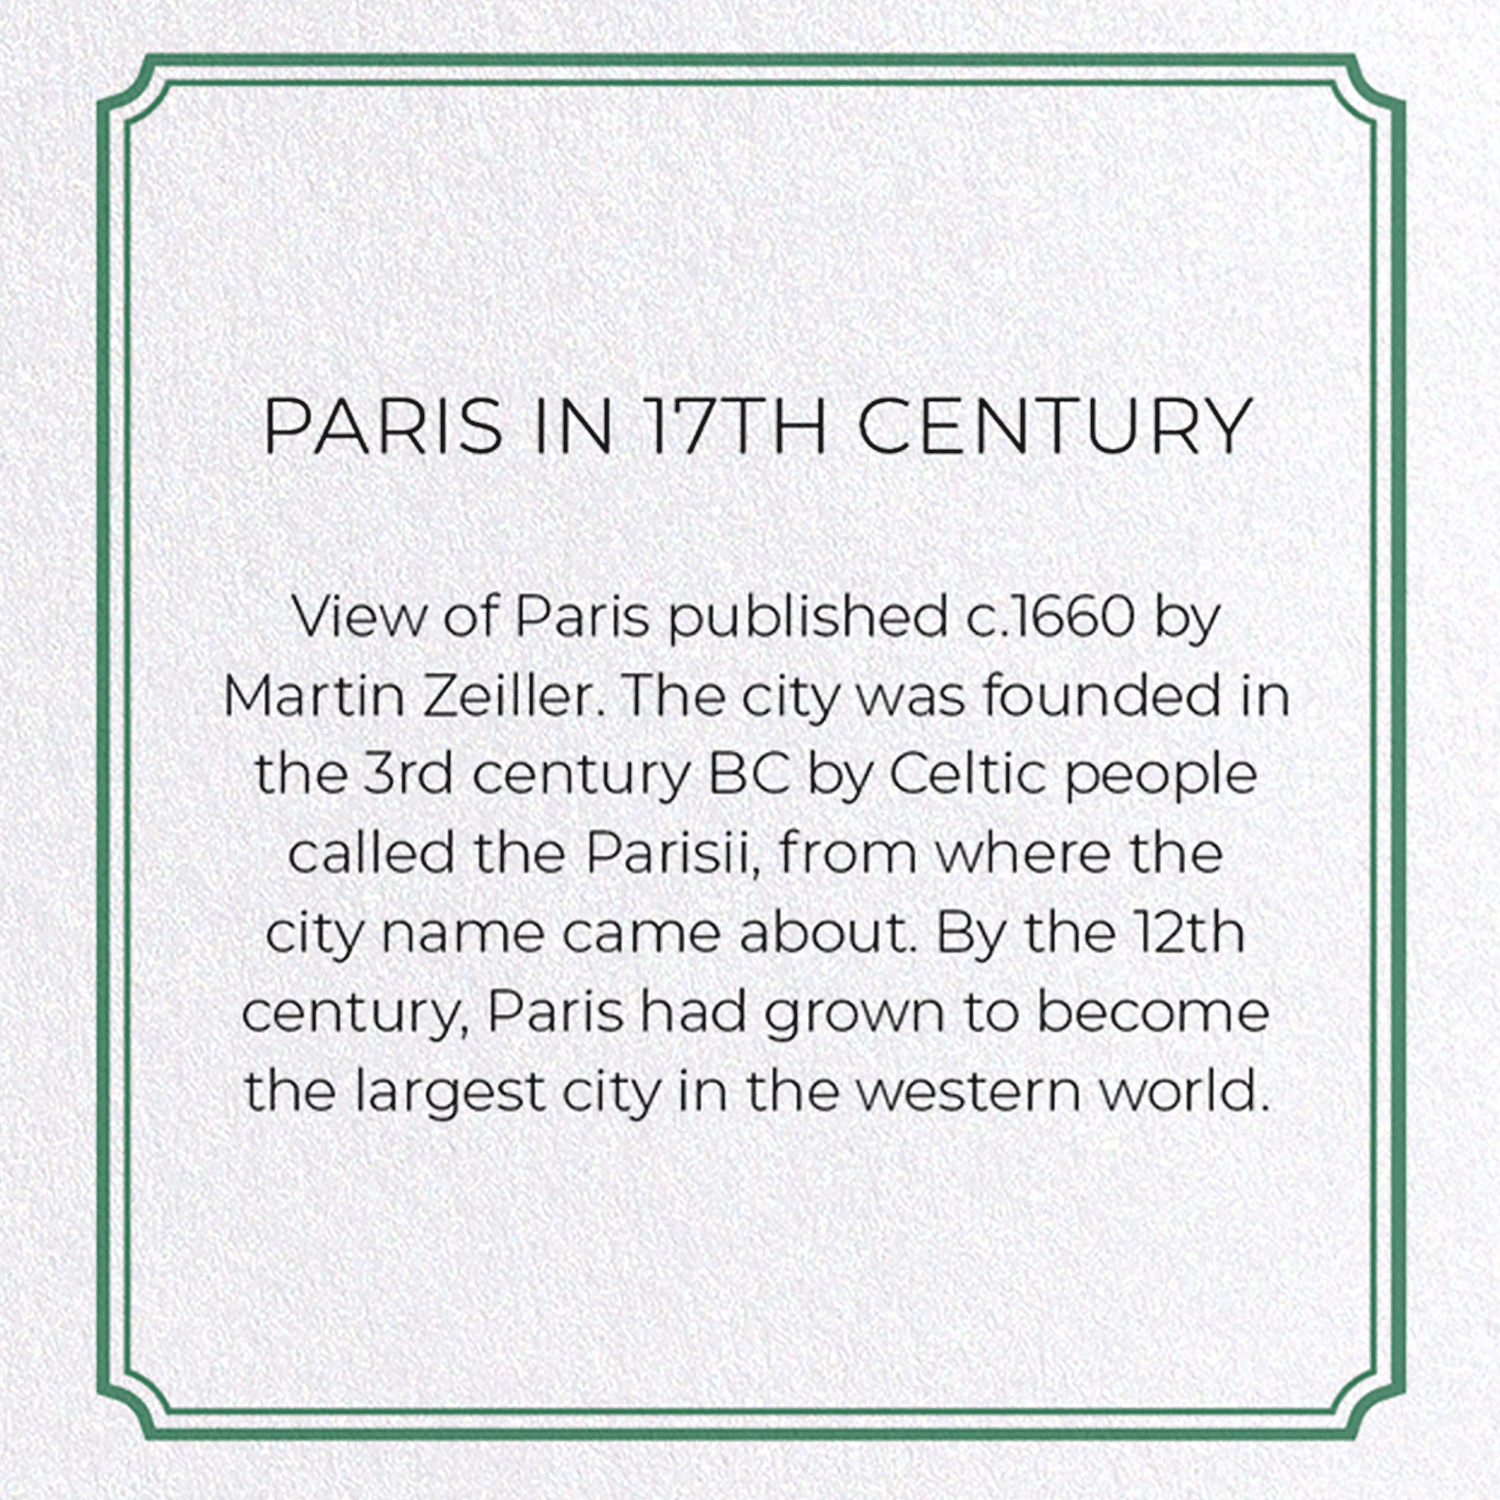 PARIS IN 17TH CENTURY